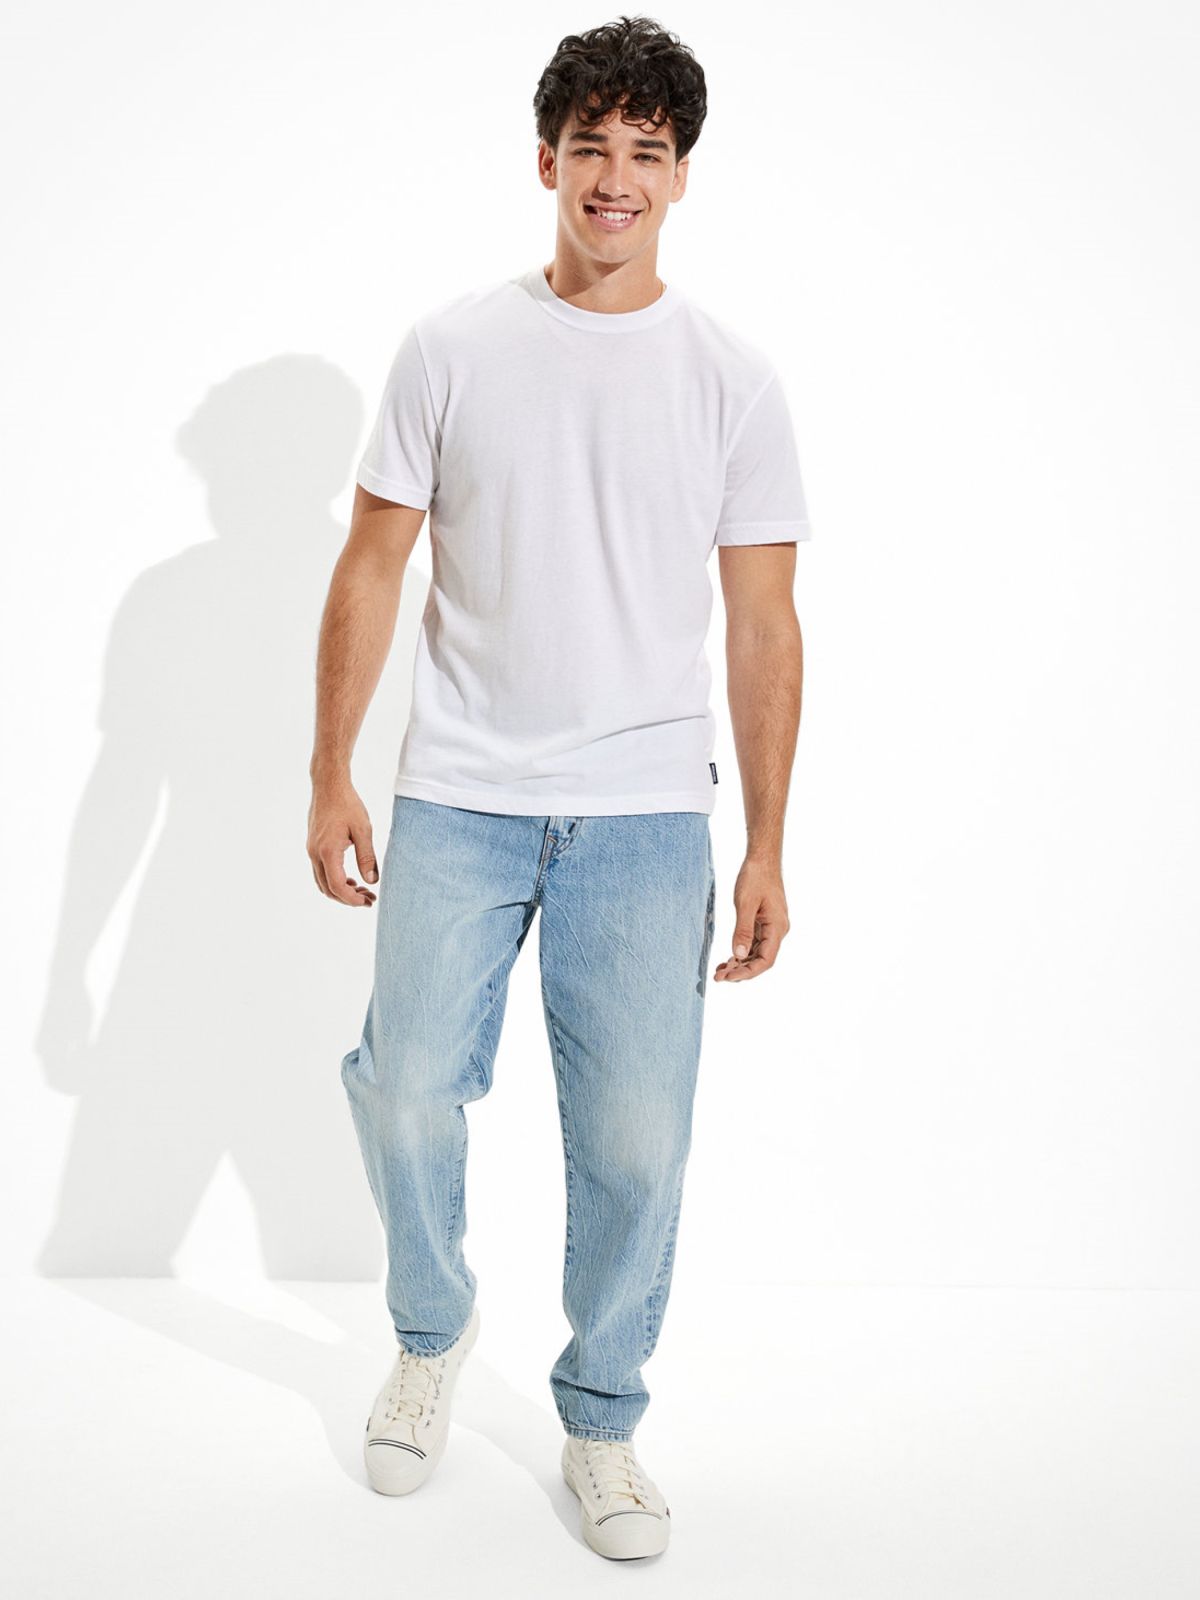  ג'ינס ארוך בשטיפה בהירה בגזרת 90'S של AMERICAN EAGLE